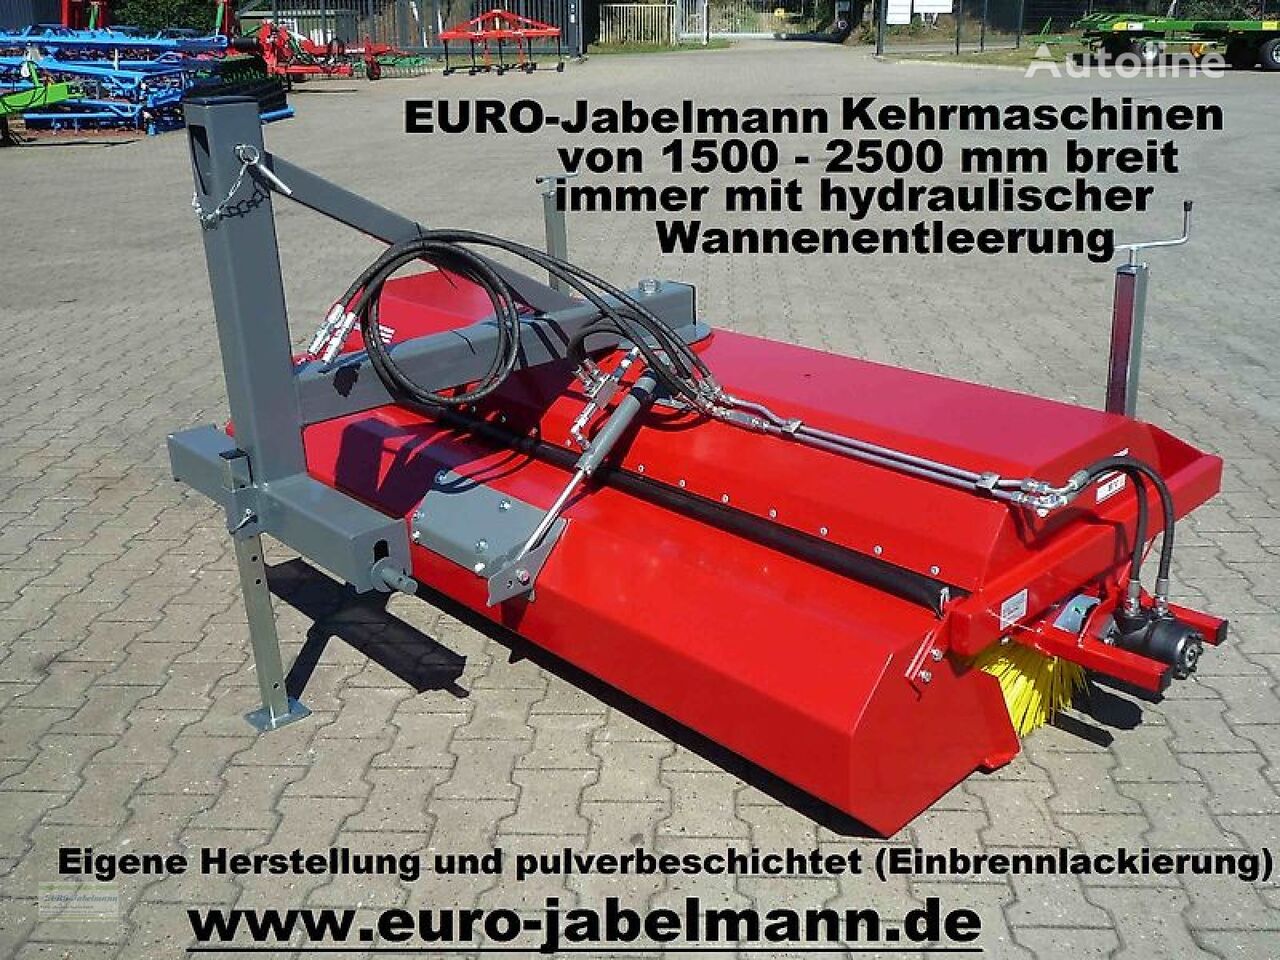 جديد فرشة آلية Euro-Jabelmann Kehrmaschinen, NEU, Breiten 1500 - 2500 mm, eigene Herstellung